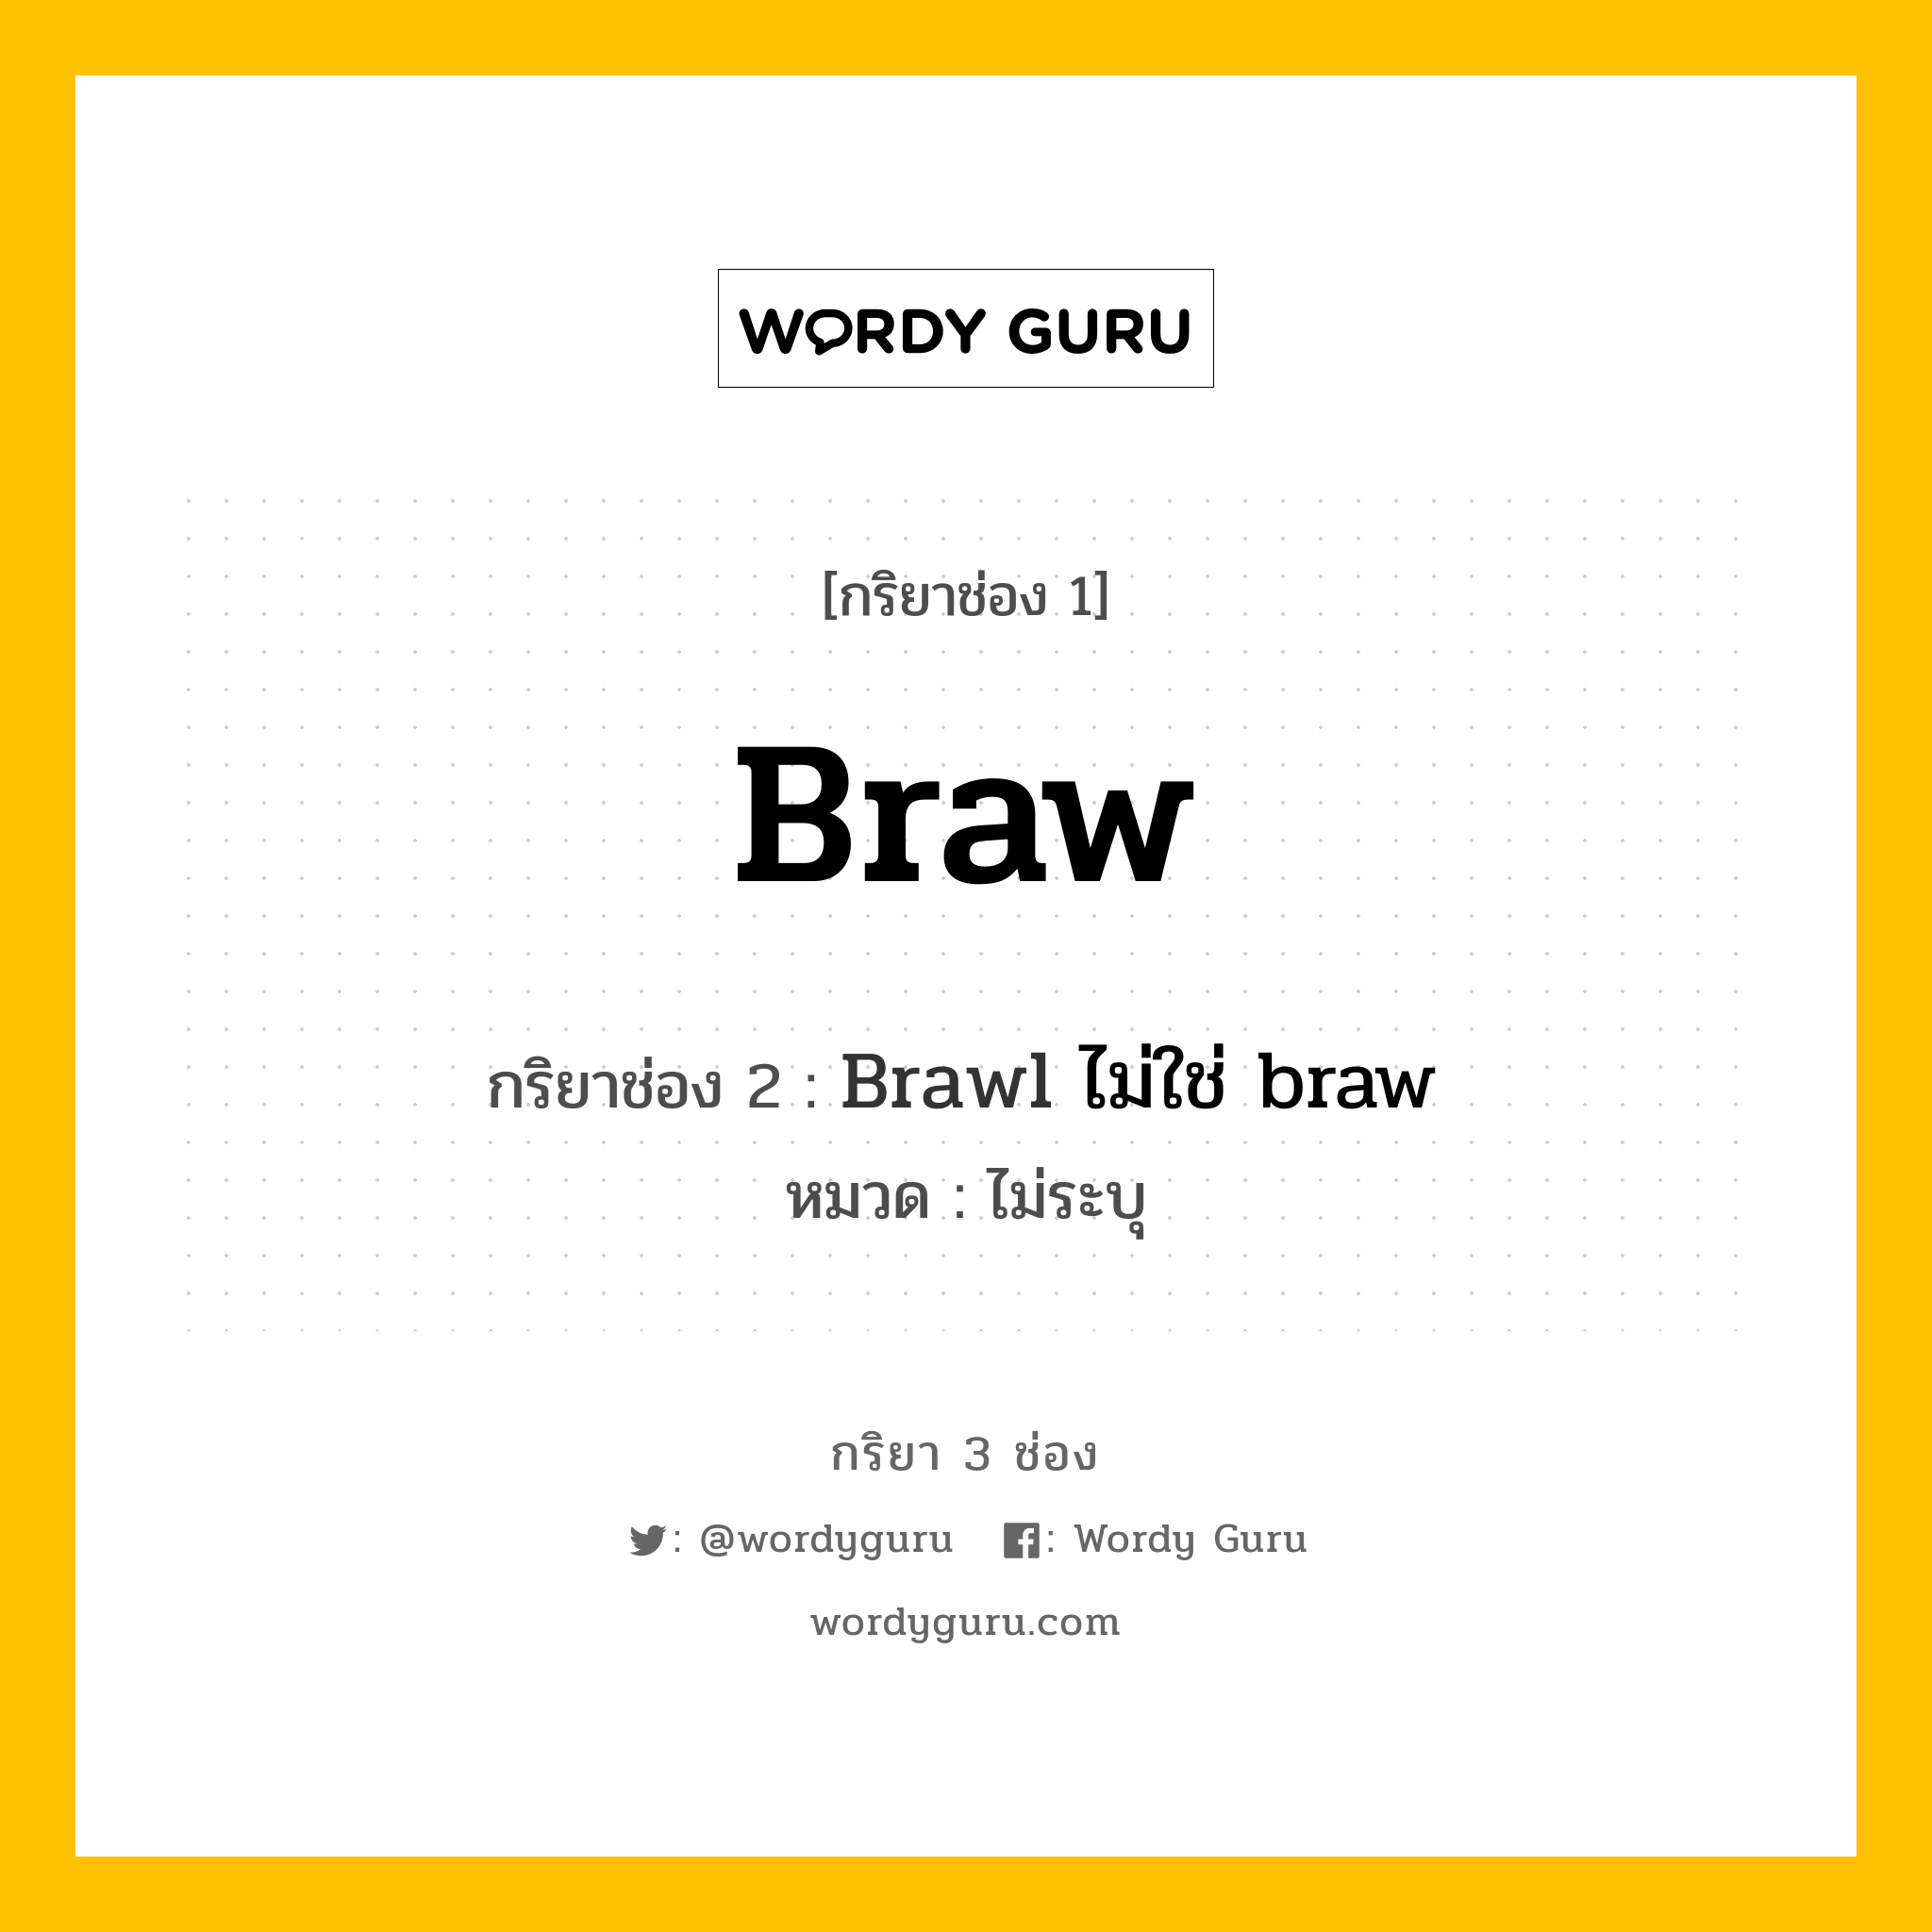 กริยา 3 ช่อง ของ Braw คืออะไร? มาดูคำอ่าน คำแปลกันเลย, กริยาช่อง 1 Braw กริยาช่อง 2 Brawl ไม่ใช่ braw หมวด ไม่ระบุ หมวด ไม่ระบุ